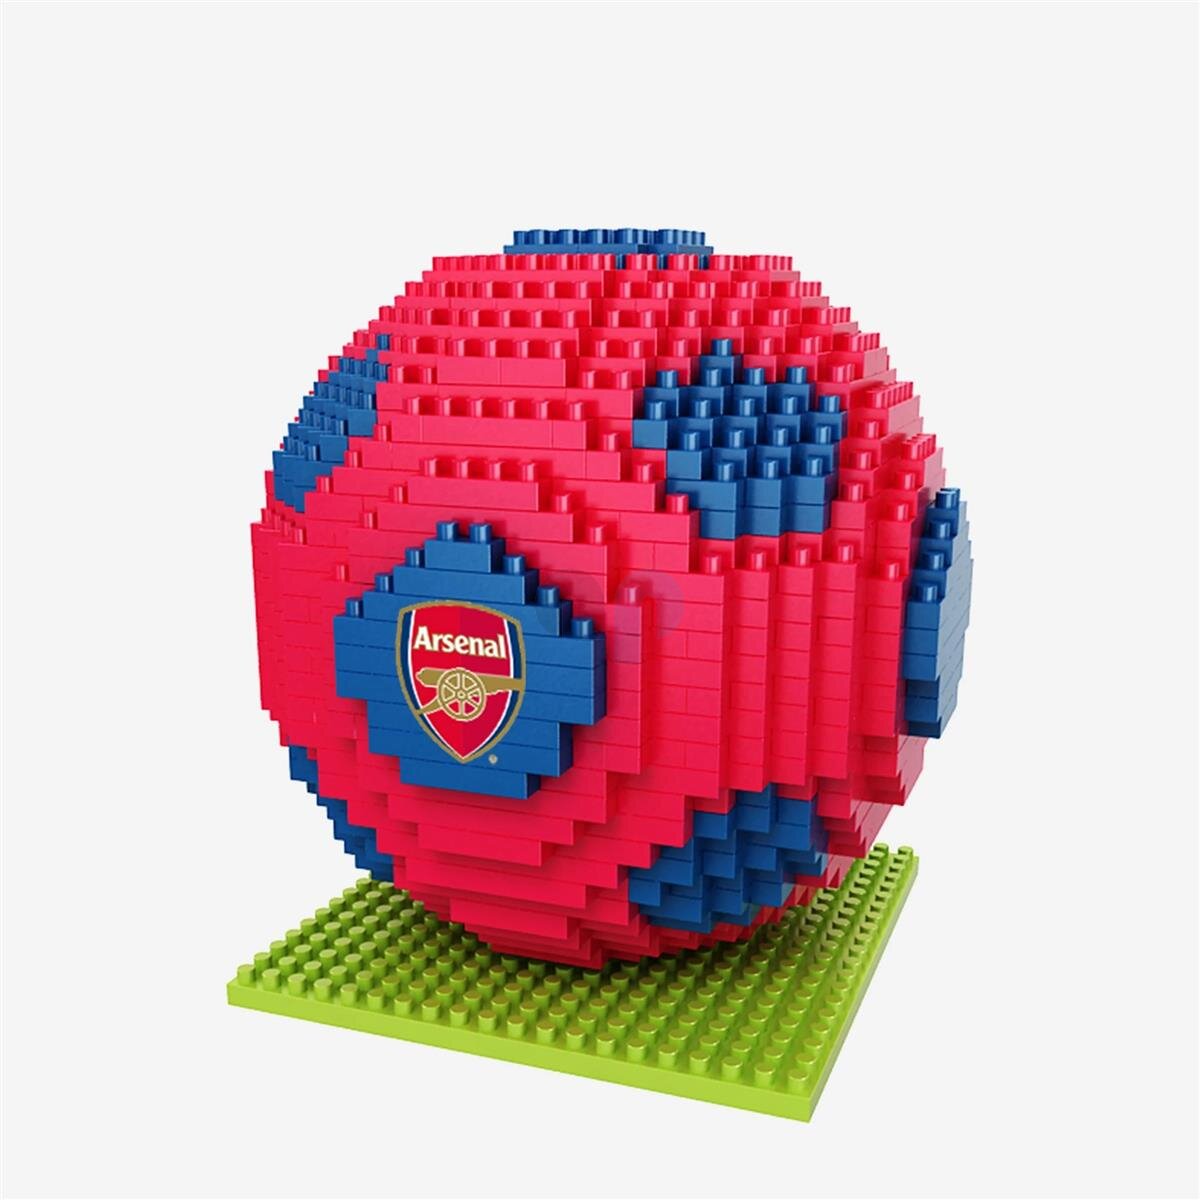 Tottenham Hotspur FC 3D BRXLZ Lego Football Building Set 